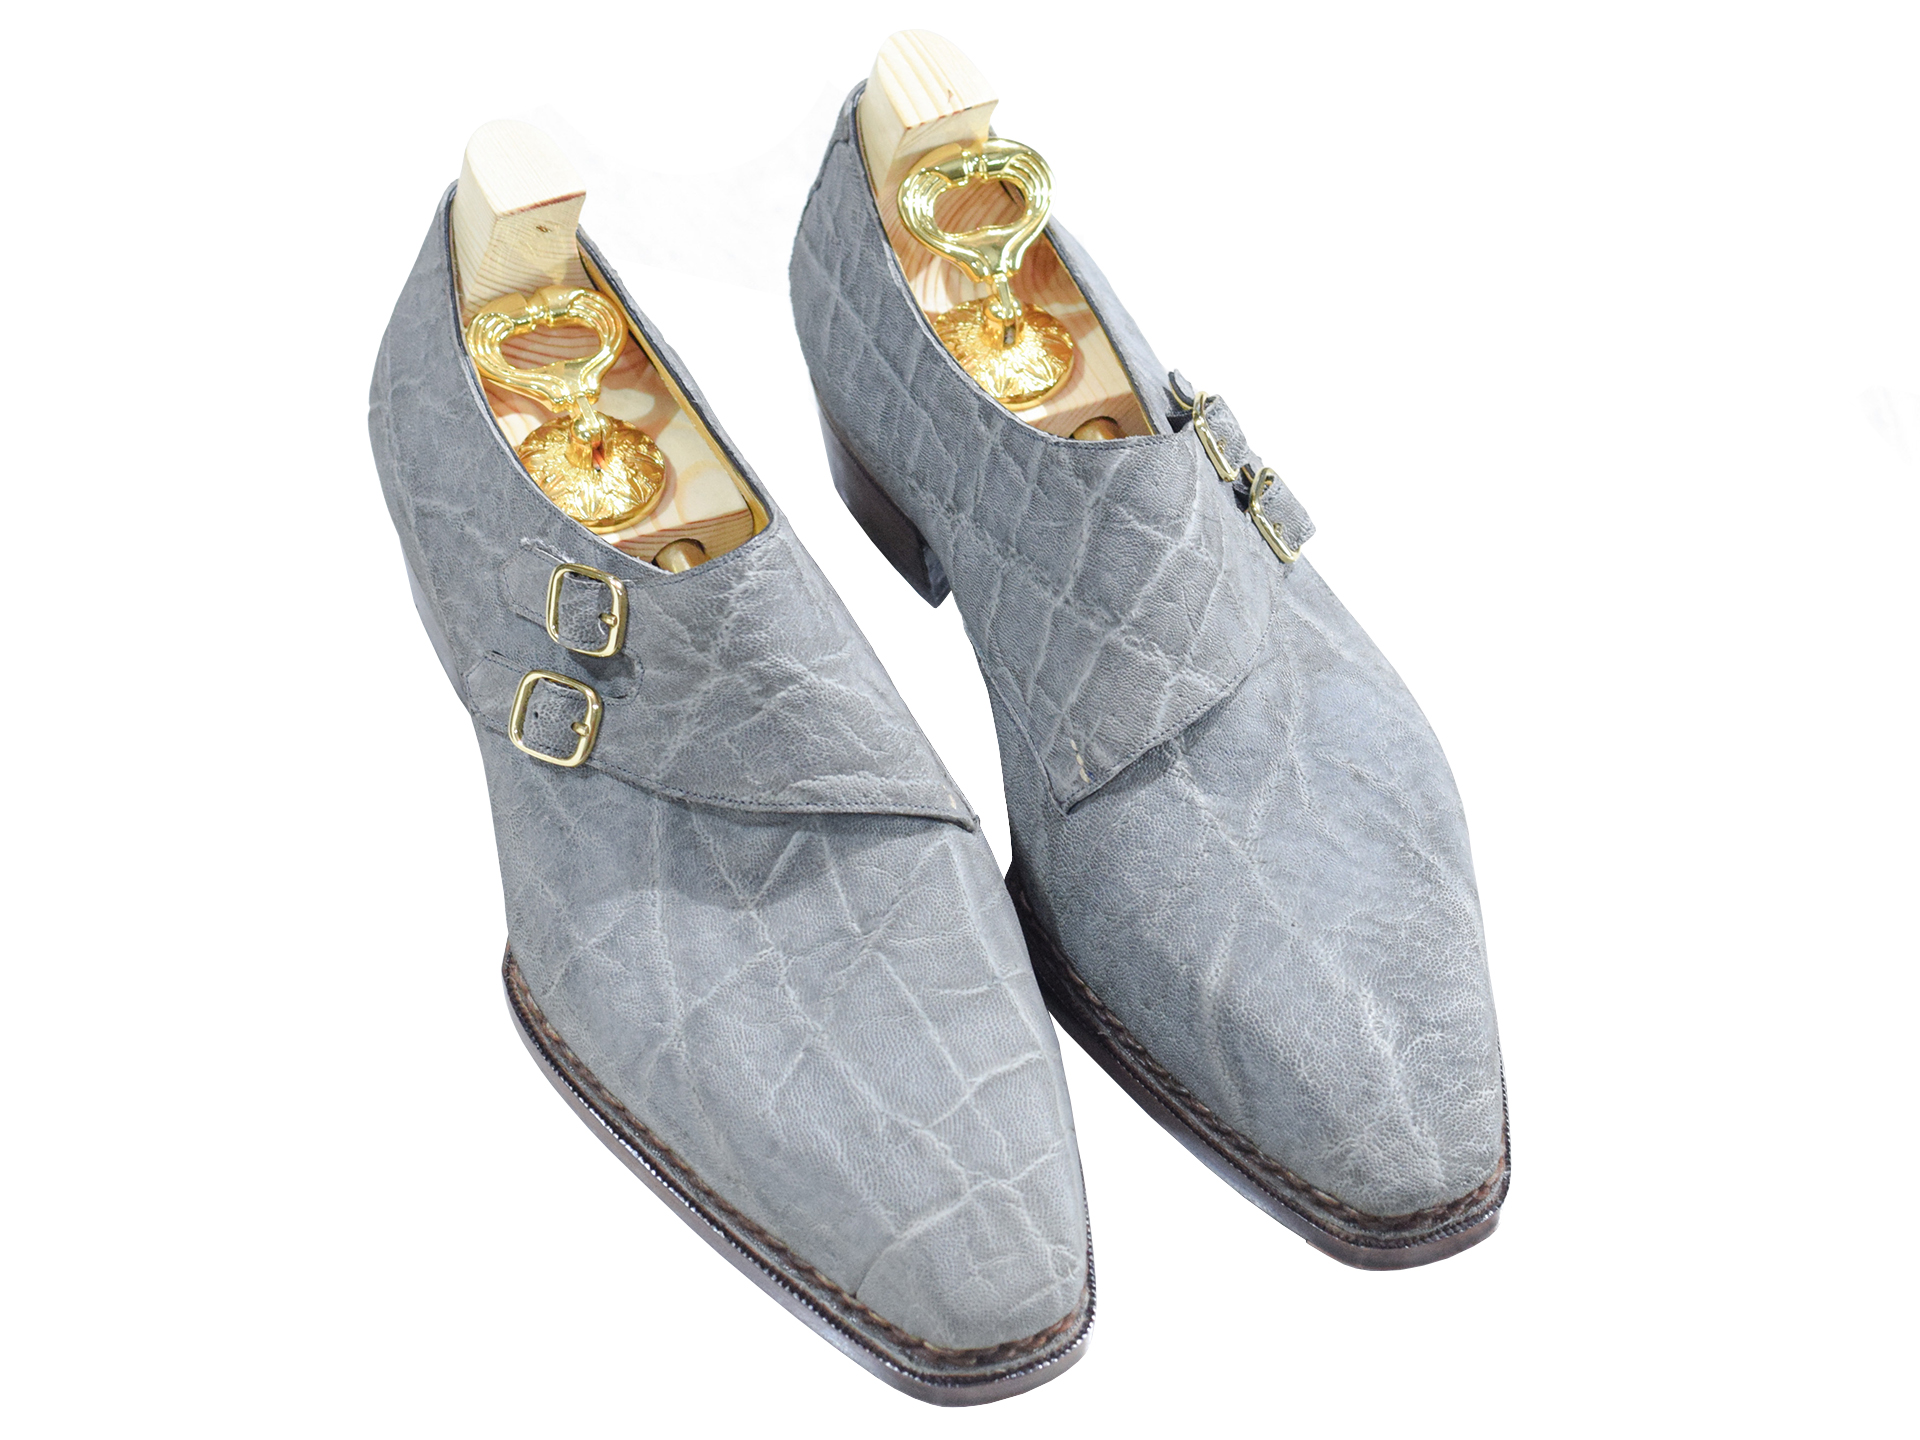 MTO Double monkstrap shoes - Elephant leather